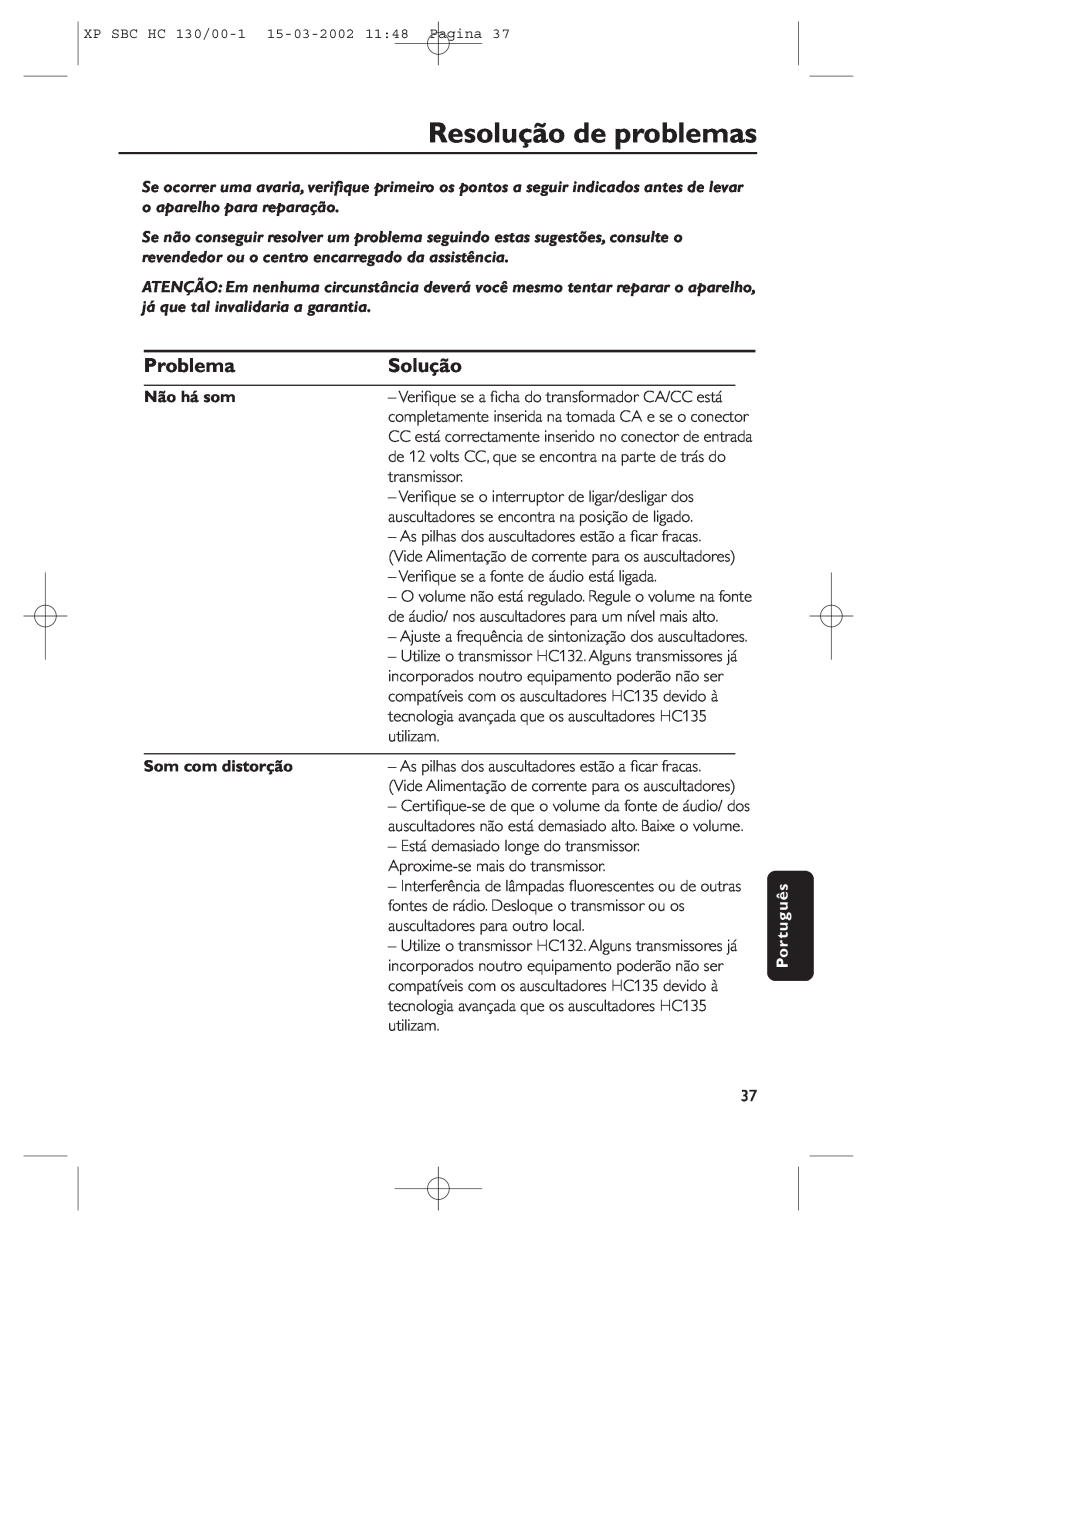 Philips SBC HC130 manual Resolução de problemas, Problema, Solução, Não há som, Som com distorção, Português 